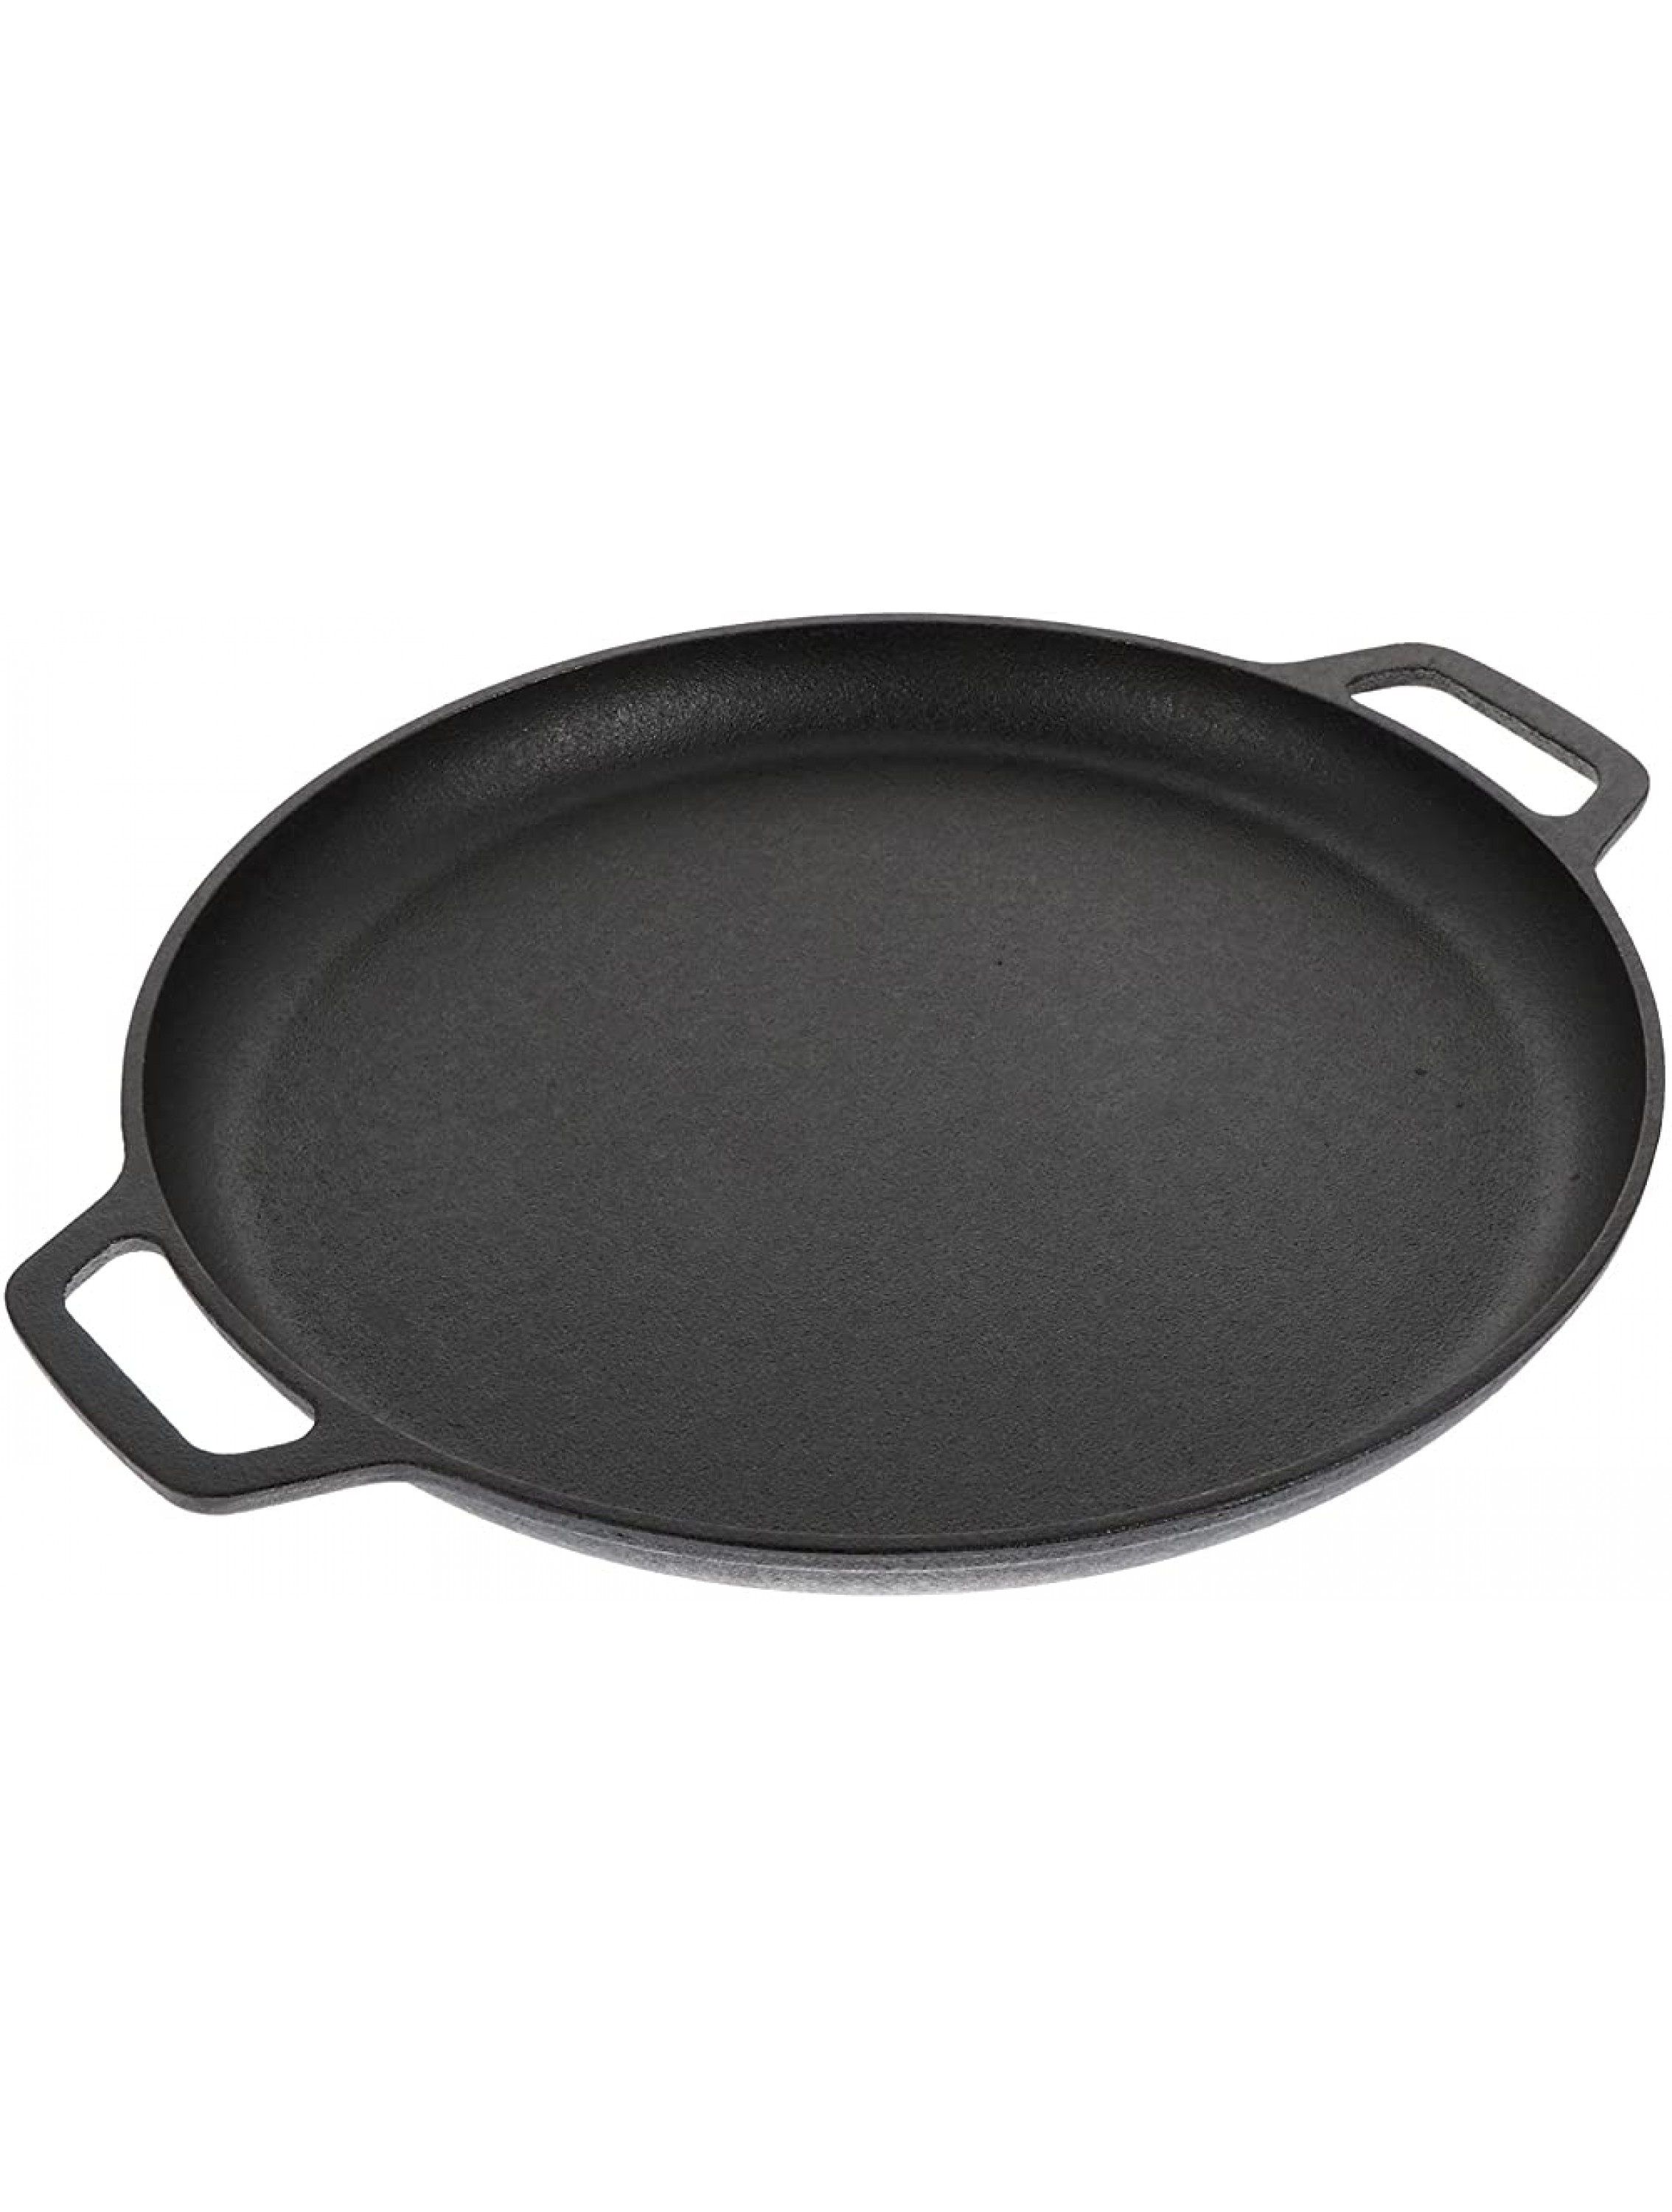 Cabilock Crepe Pan Nonstick Tortilla Pancake Pan for Iron Griddle Round Flat Skillet Cooking Utensil - B2INETJ04